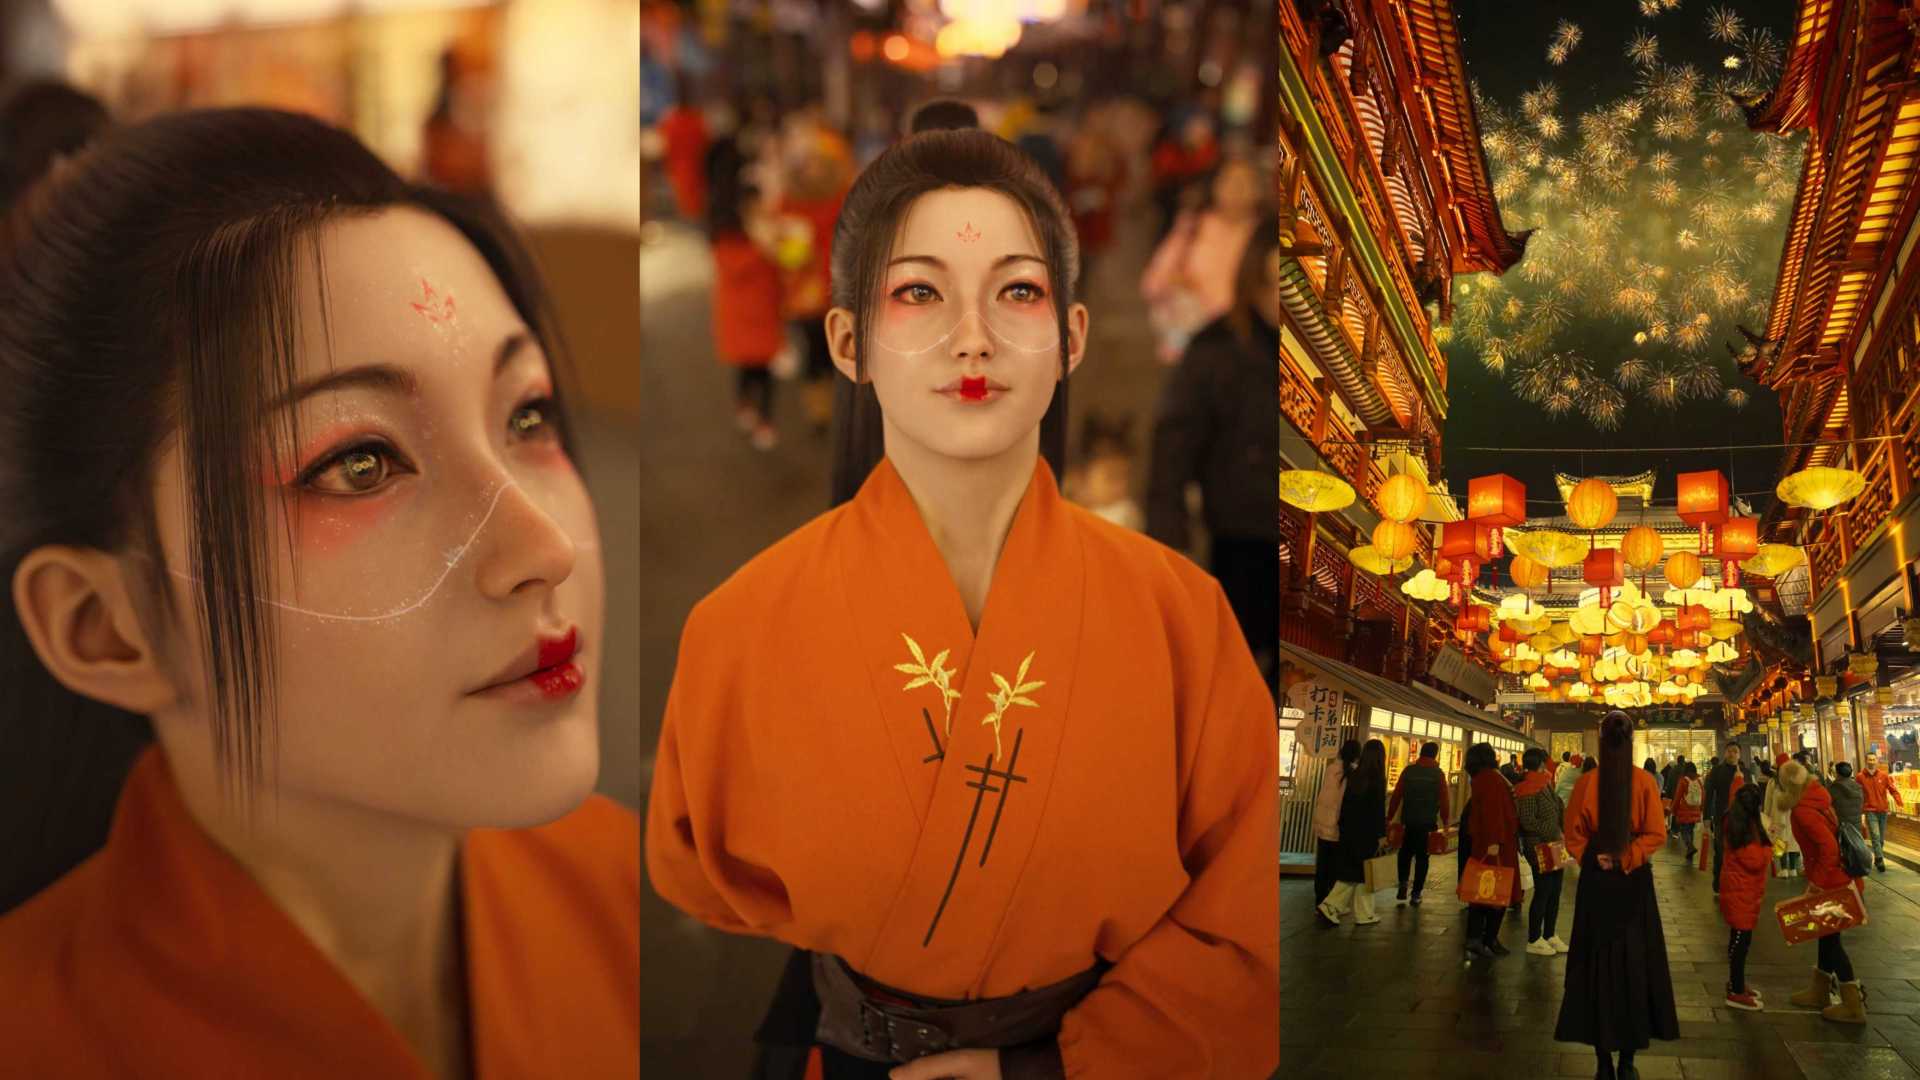 柳夜熙-中国传统色系列《春节篇》